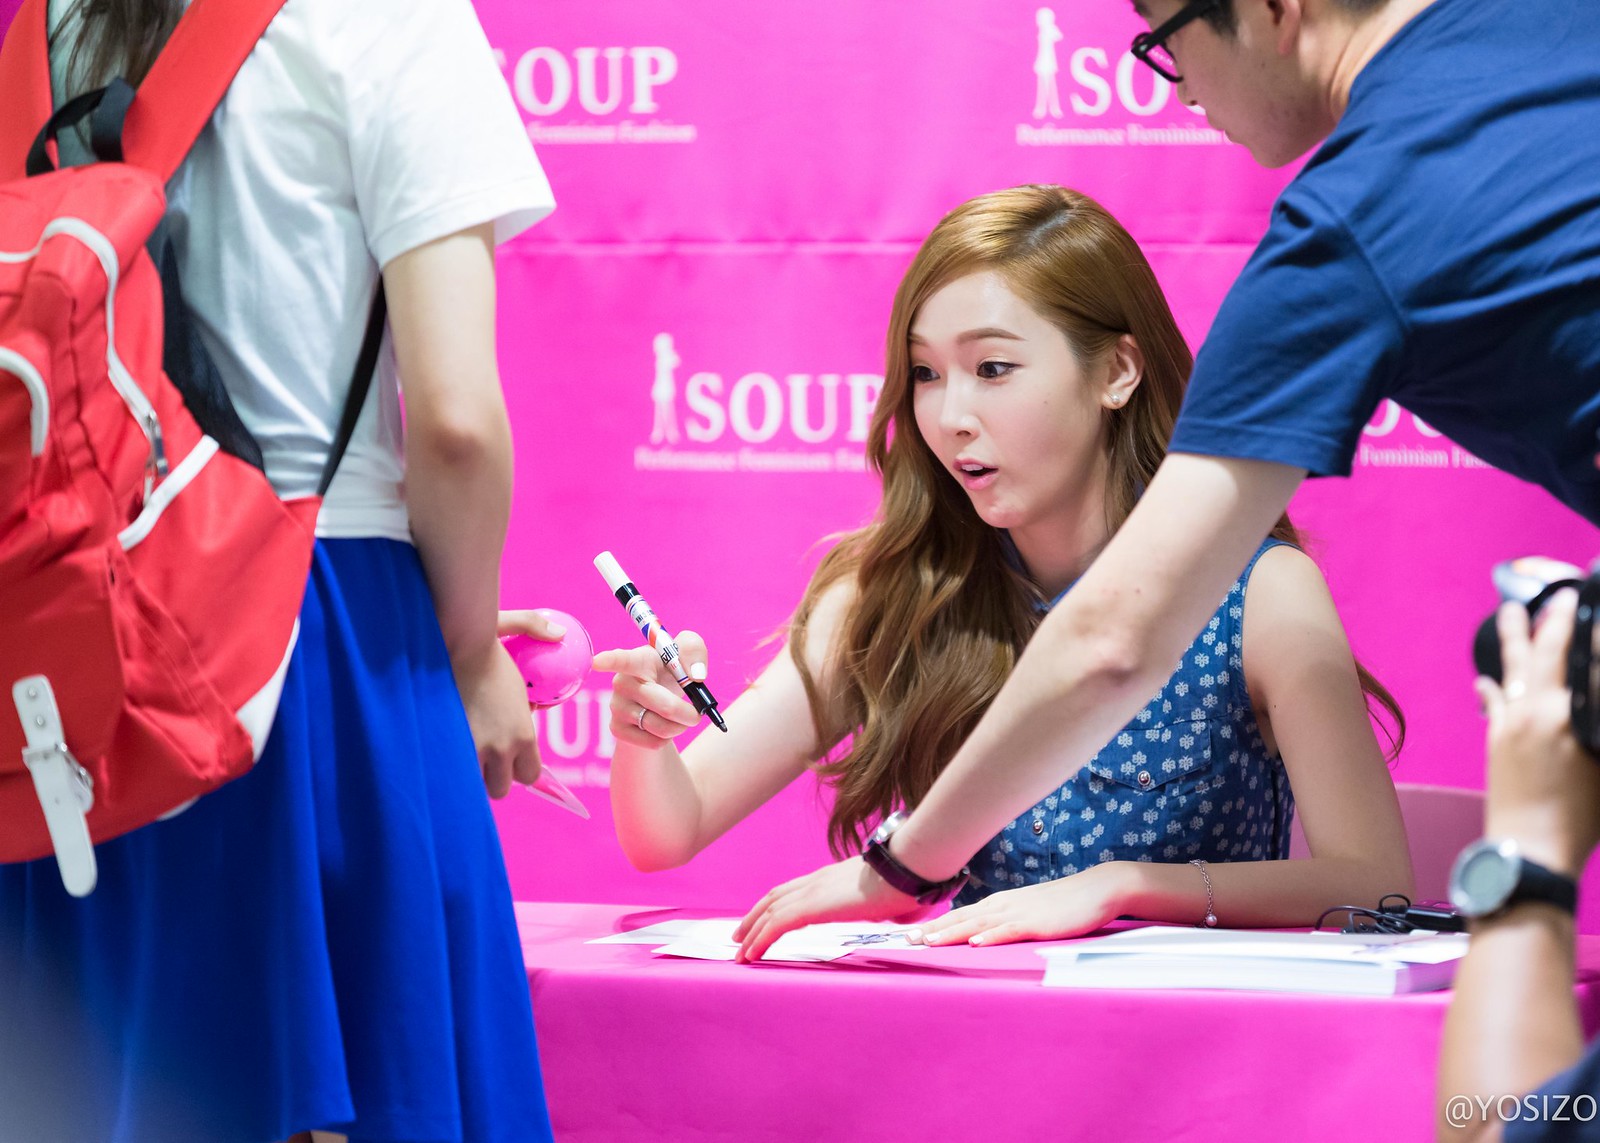 [PIC][14-06-2014]Jessica tham dự buổi fansign lần 2 cho thương hiệu "SOUP" vào trưa nay 14238359050_a768a06ed8_h